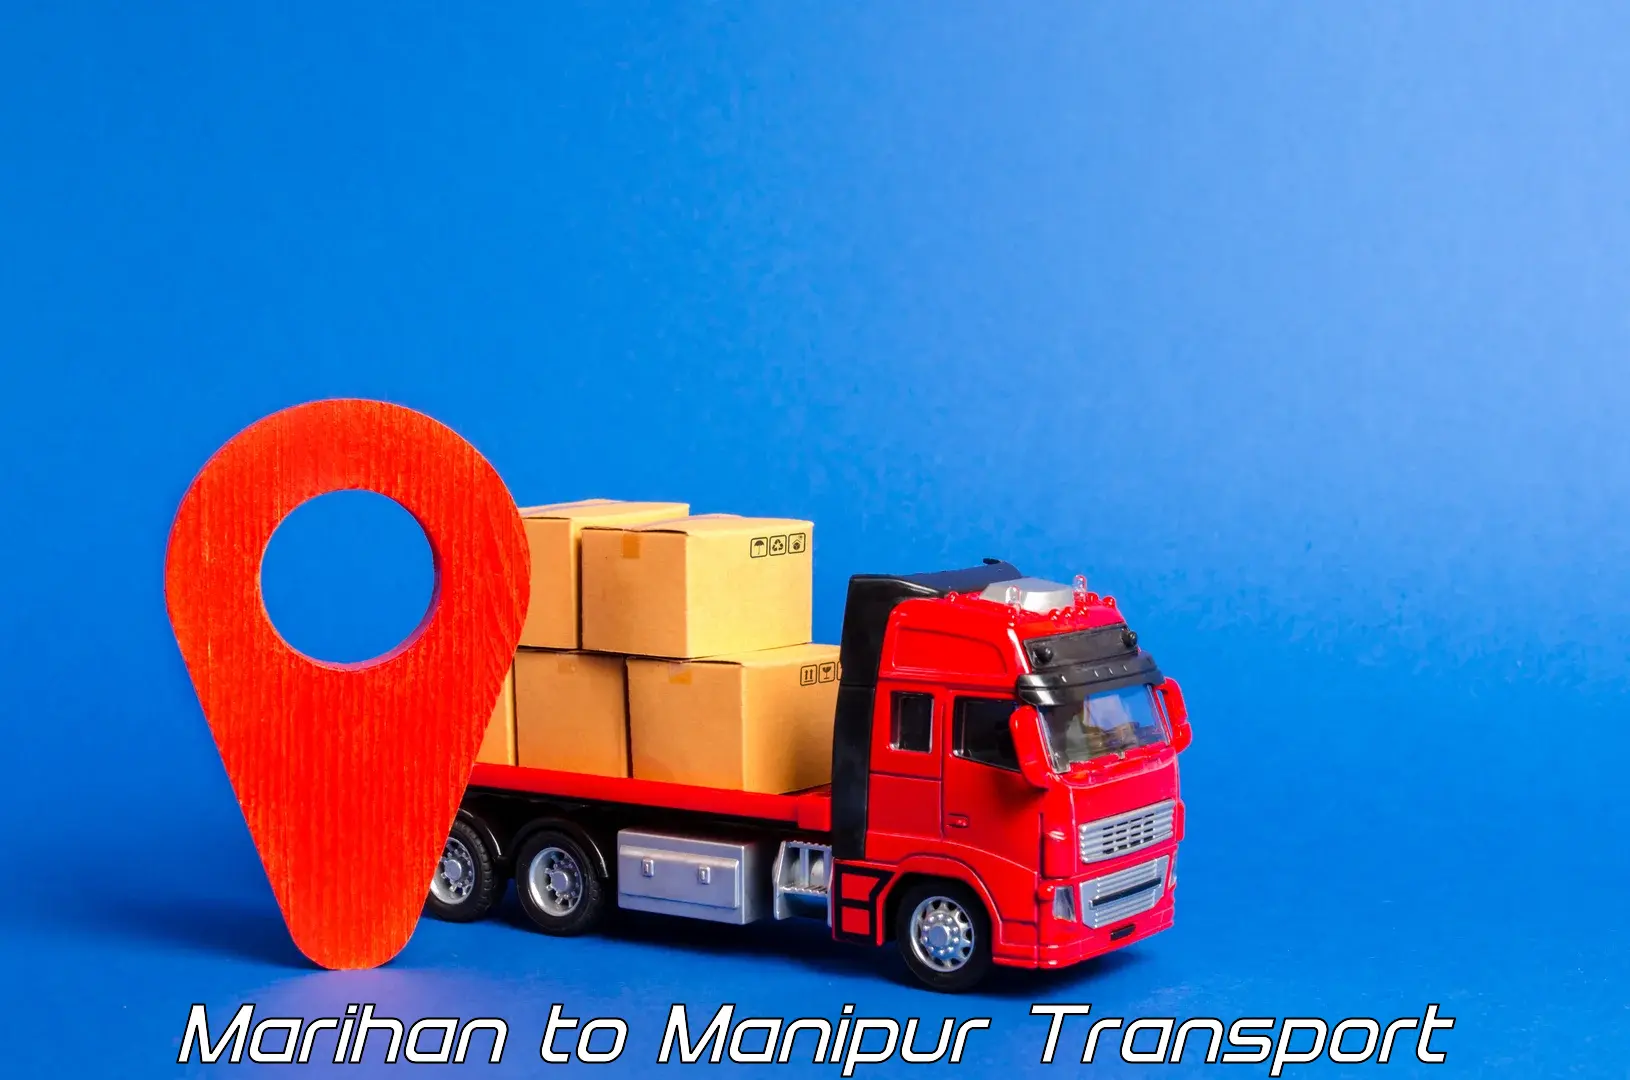 Pick up transport service Marihan to Jiribam